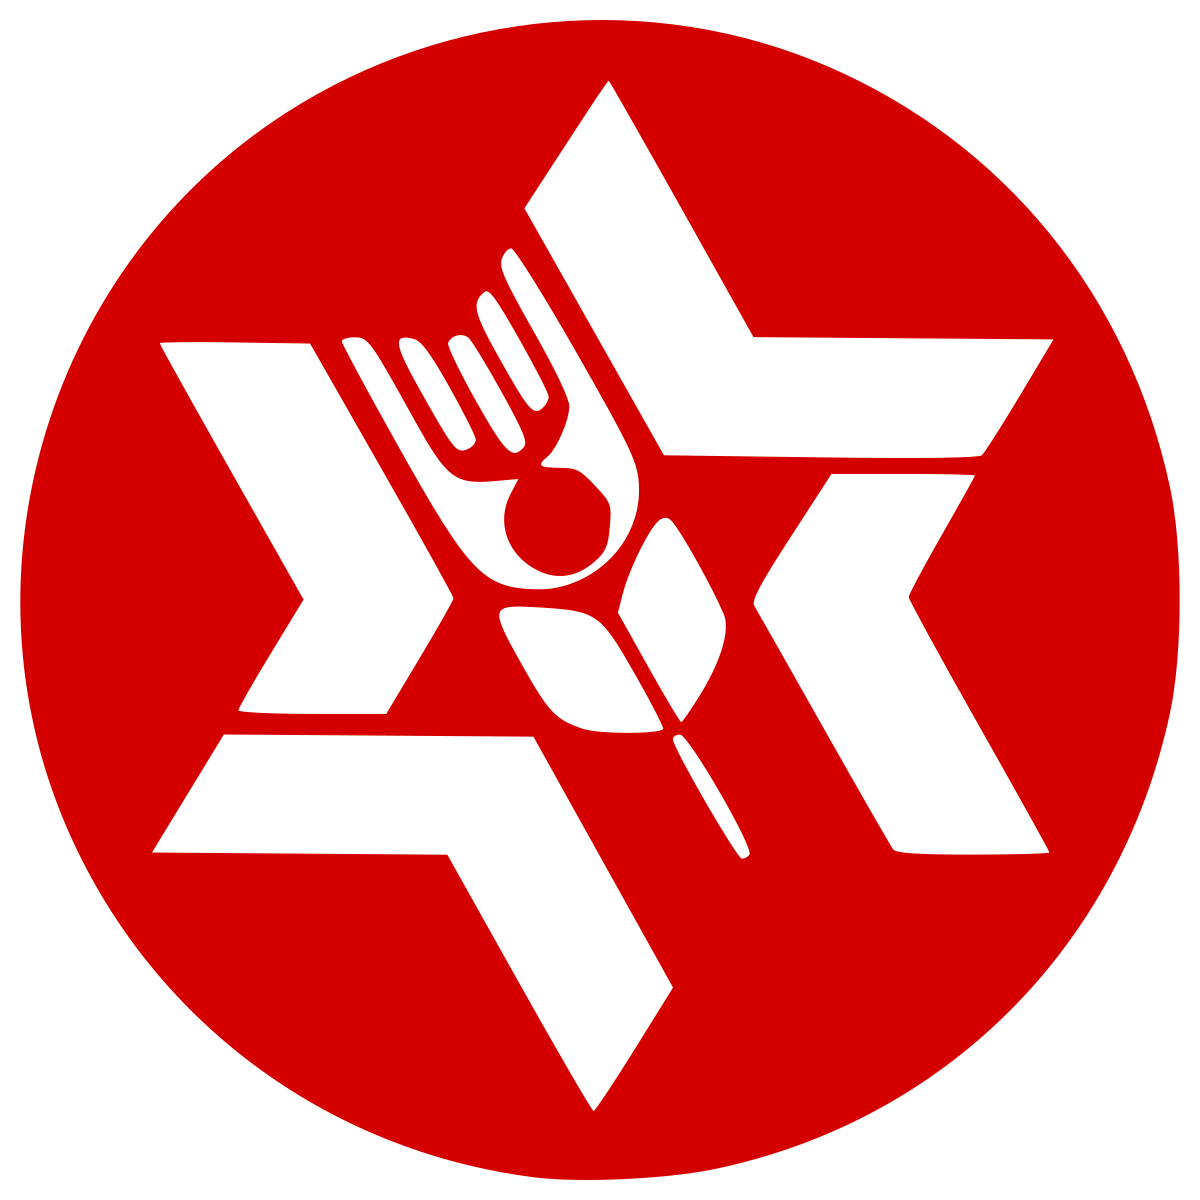 הלוגו של ארגון הבונים דרור